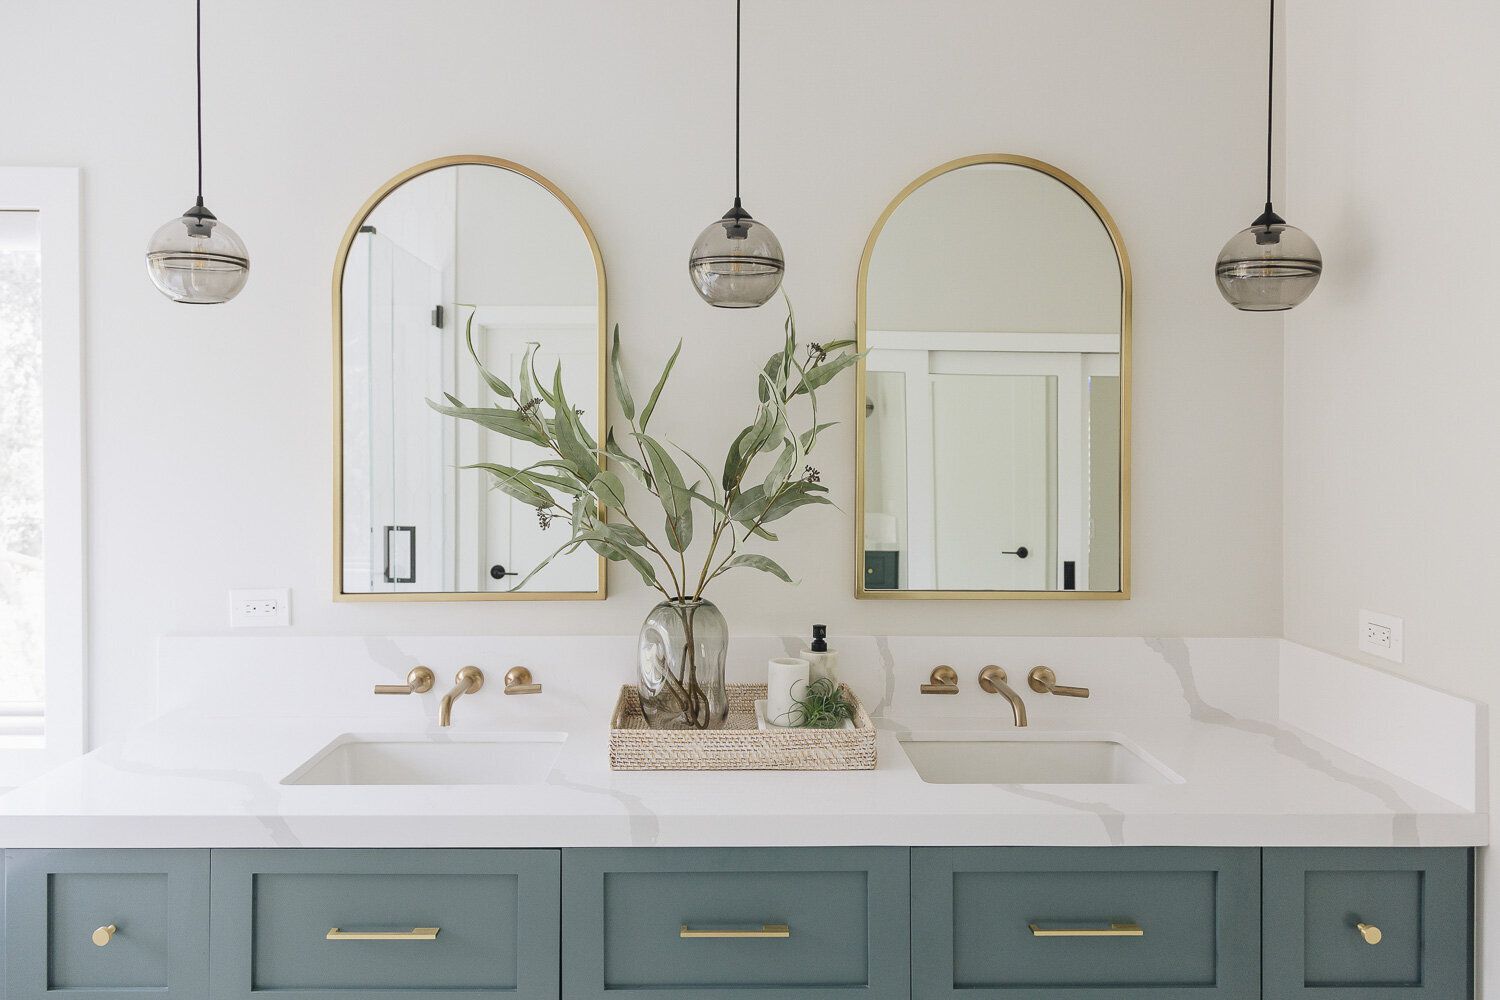 Weißes Badezimmer mit tealfarbenen Schränken und goldenen Spiegeln